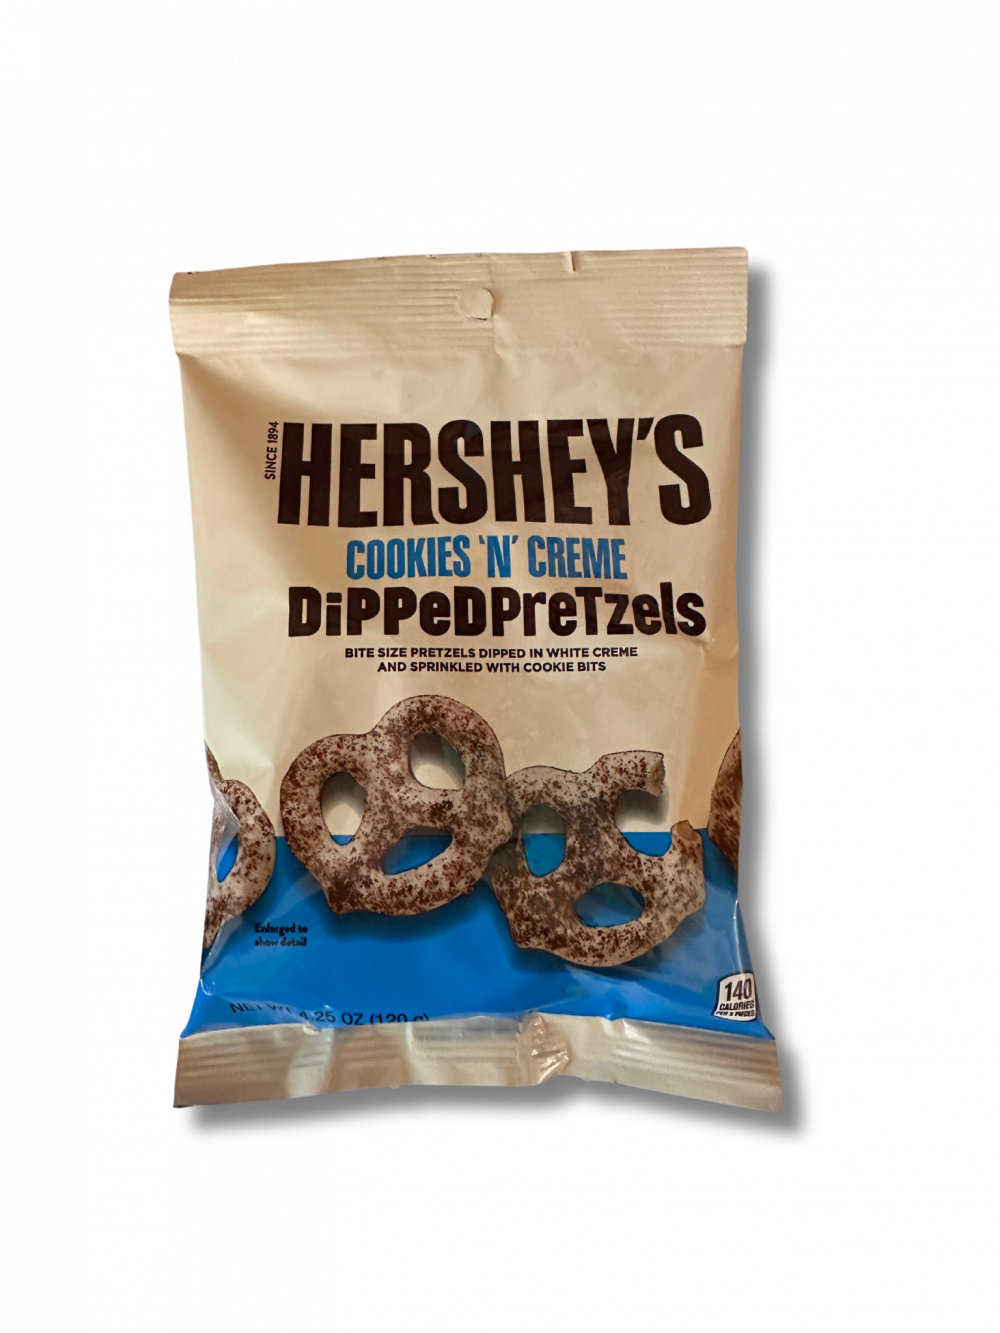 Diese HERSHEY'S Cookies 'N' Creme Dipped Pretzels sind der ultimative Snack für jeden Schokoladenliebhaber. Salzige, knusprige Brezeln getaucht in süßer Cookies 'N' Creme Schokolade - ein sinnlicher Mix, der einfach süchtig macht. […] - Breddas Hemp & Sweets Company Wuppertal